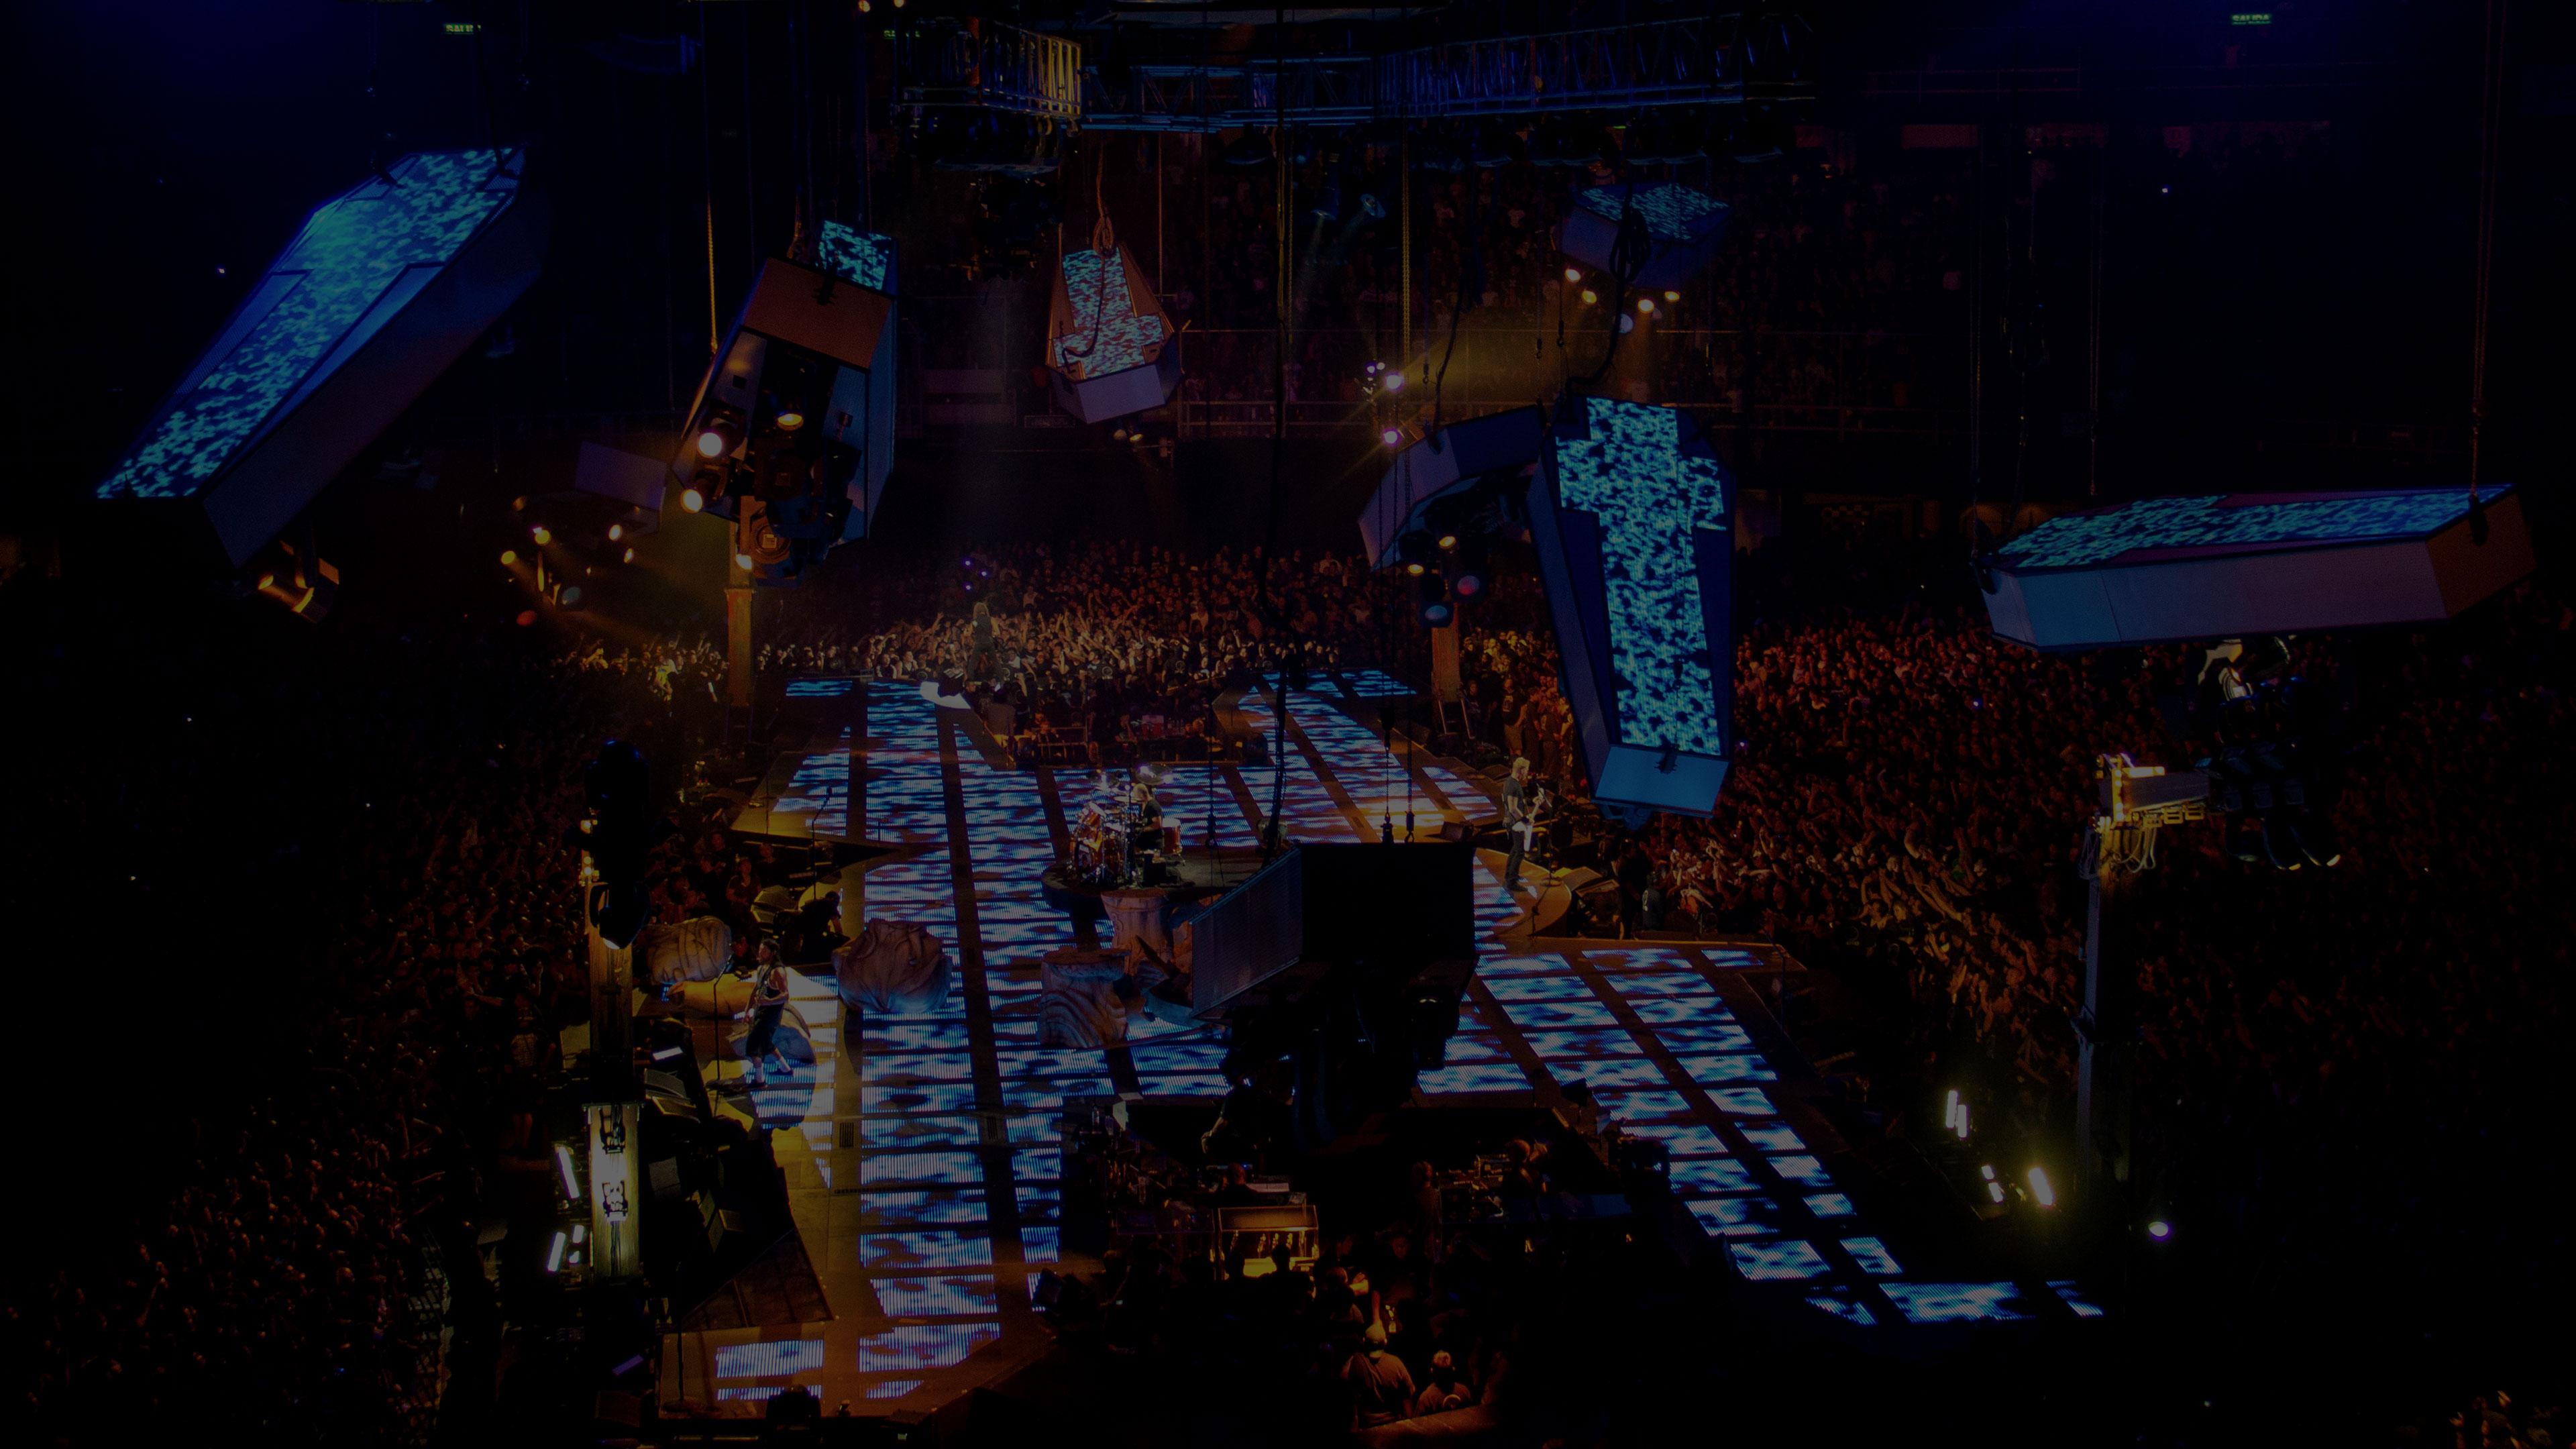 Metallica at Palacio de los Deportes in Mexico City, Mexico on August 2, 2012